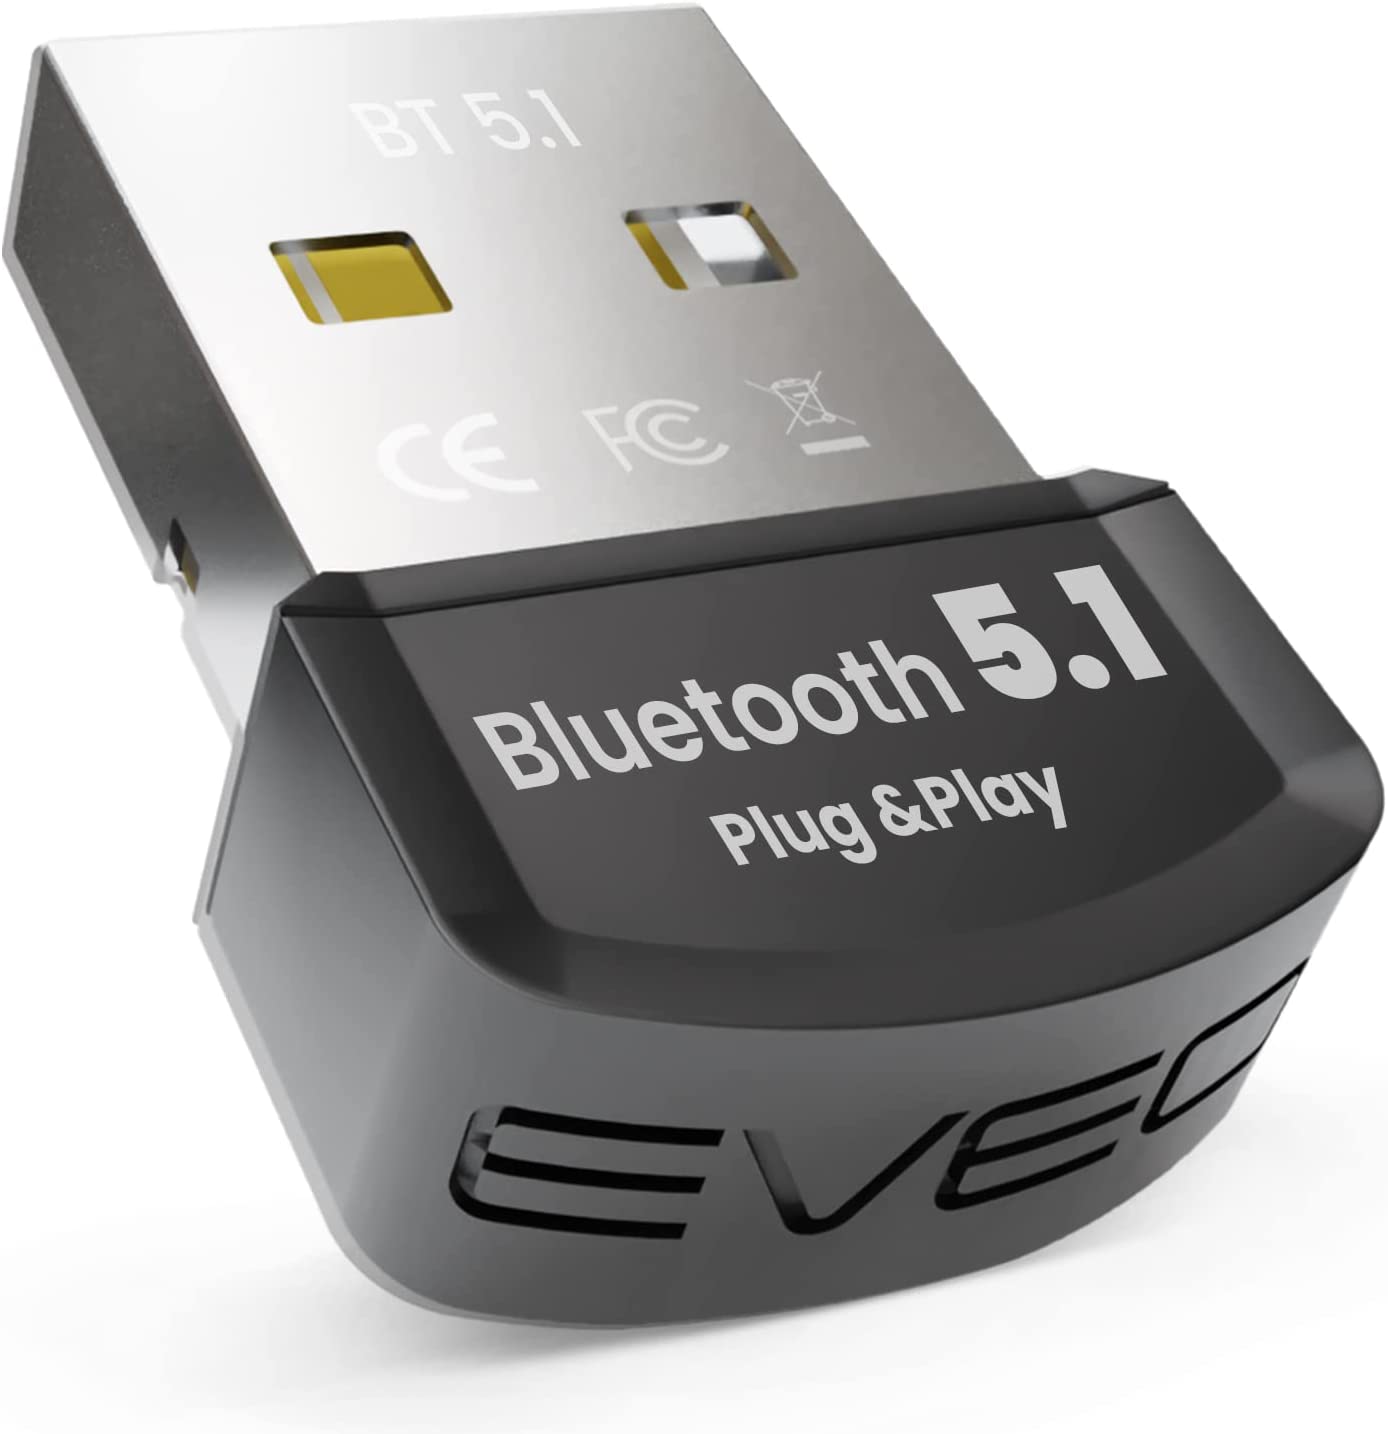 EVEO Bluetooth Adapter